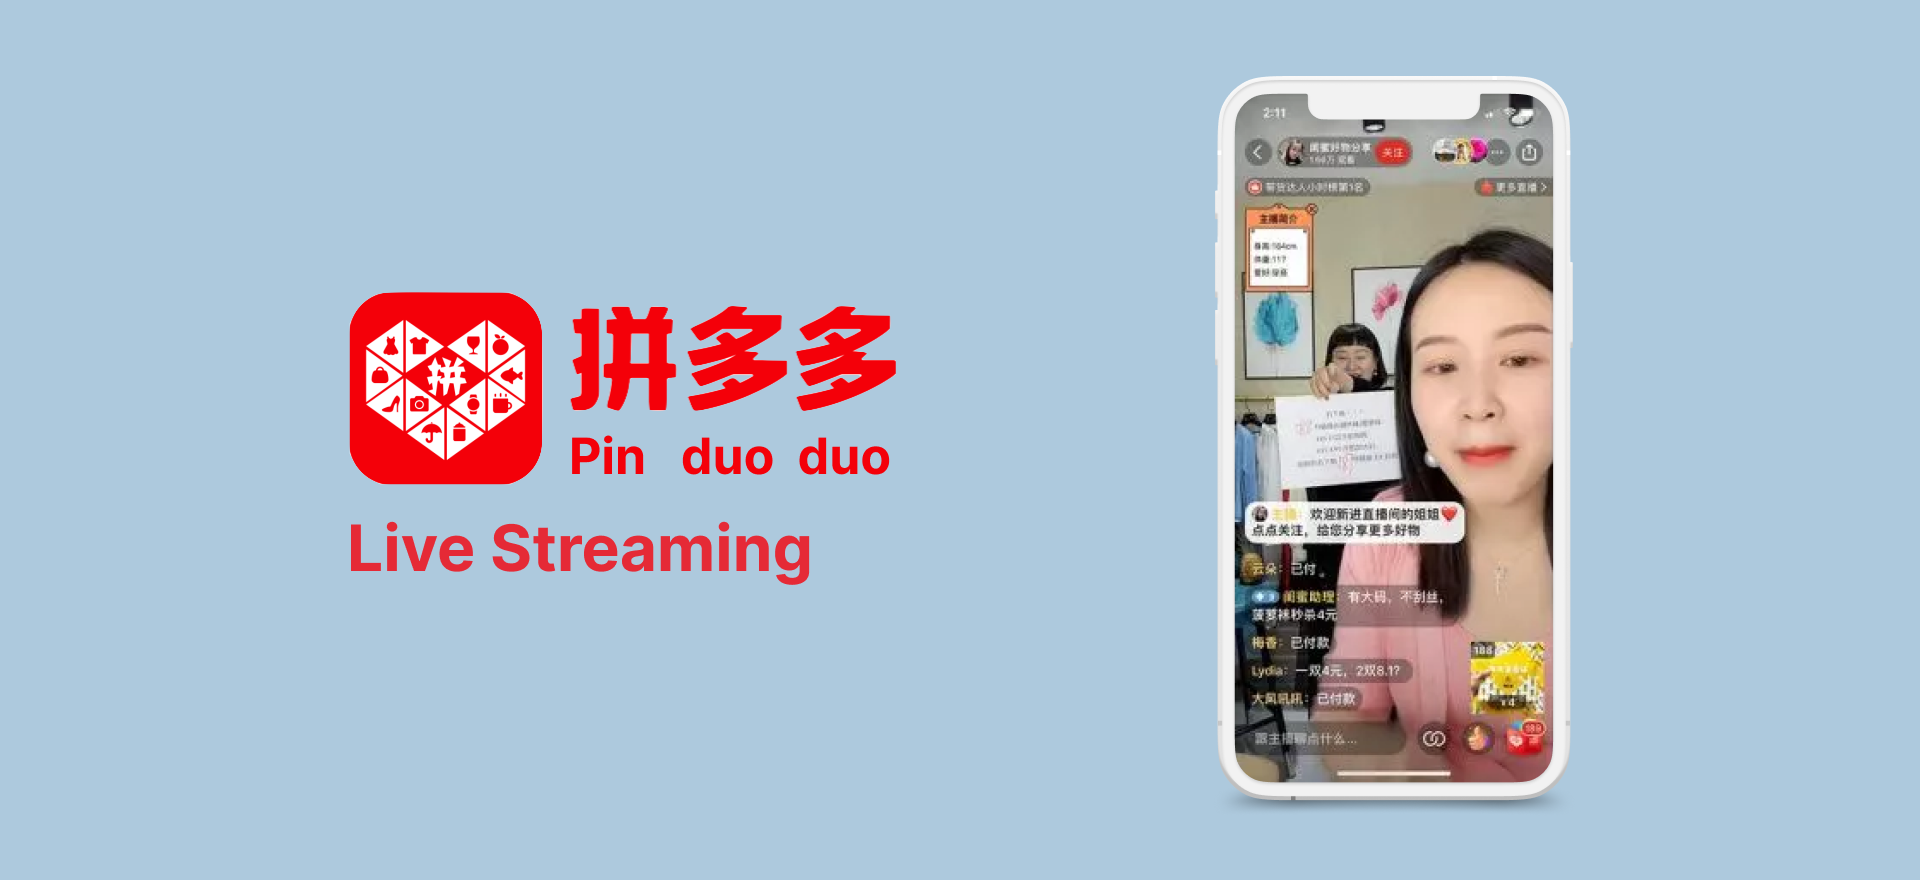 Pinduoduo social commerce app